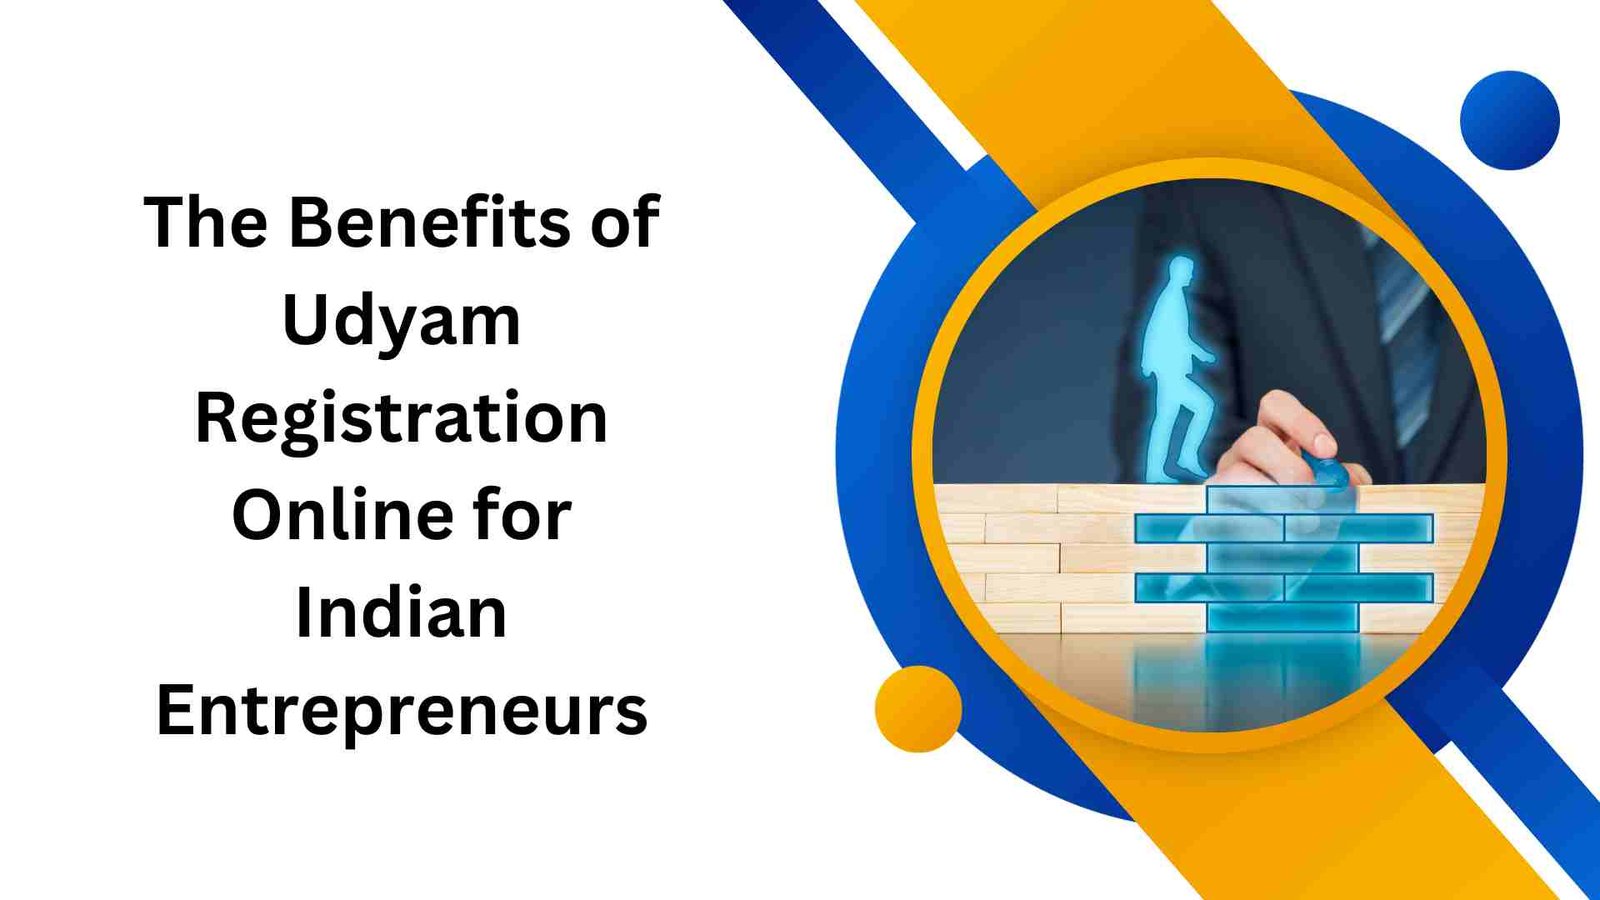 The Benefits of Udyam Registration Online for Indian Entrepreneurs